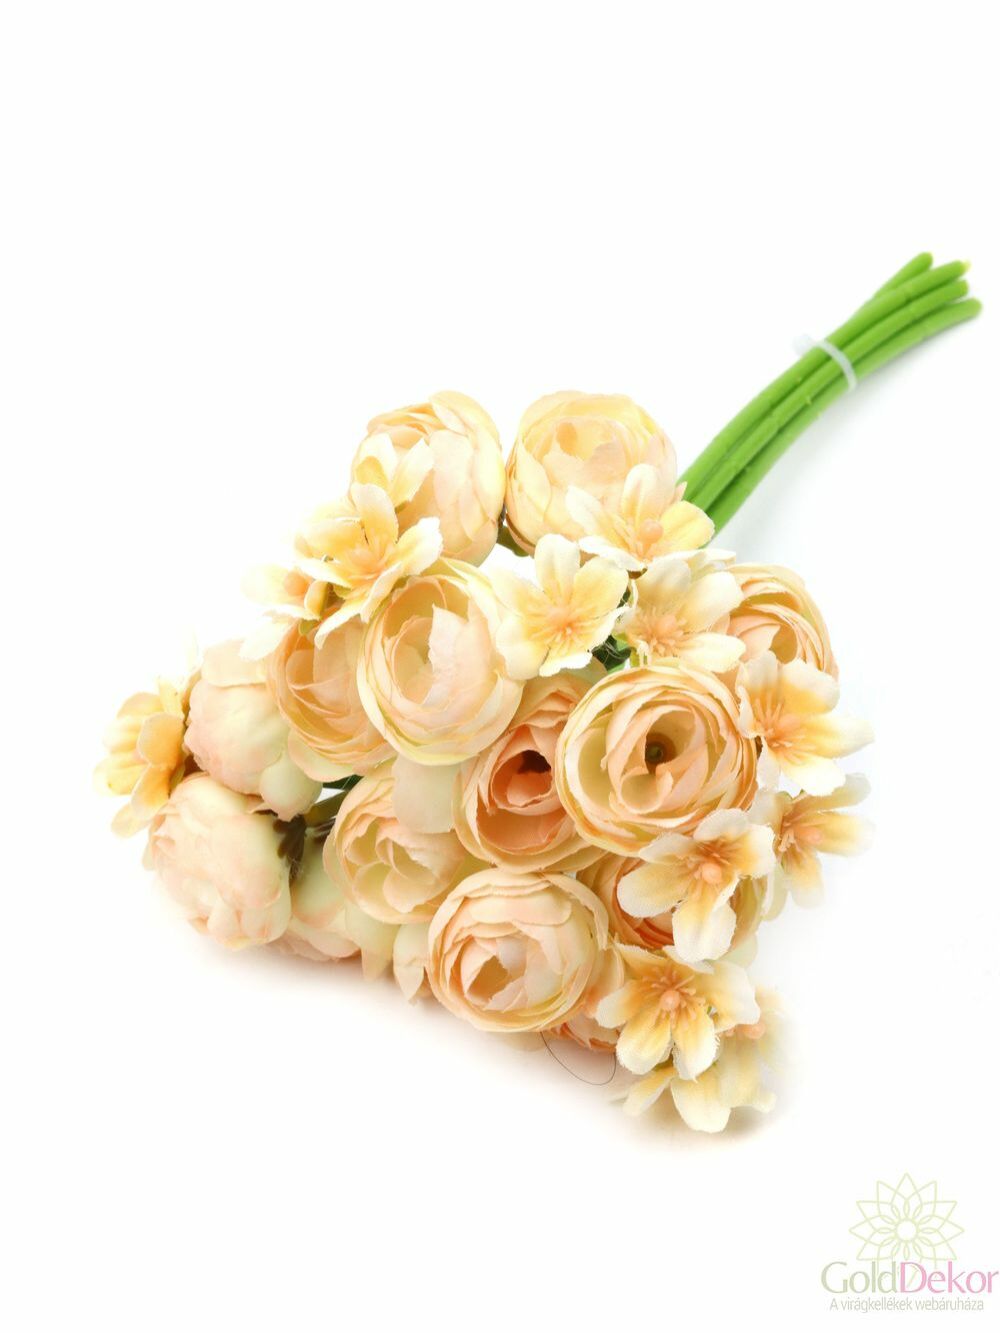 Kicsi boglárka köteg apró virággal - Krém